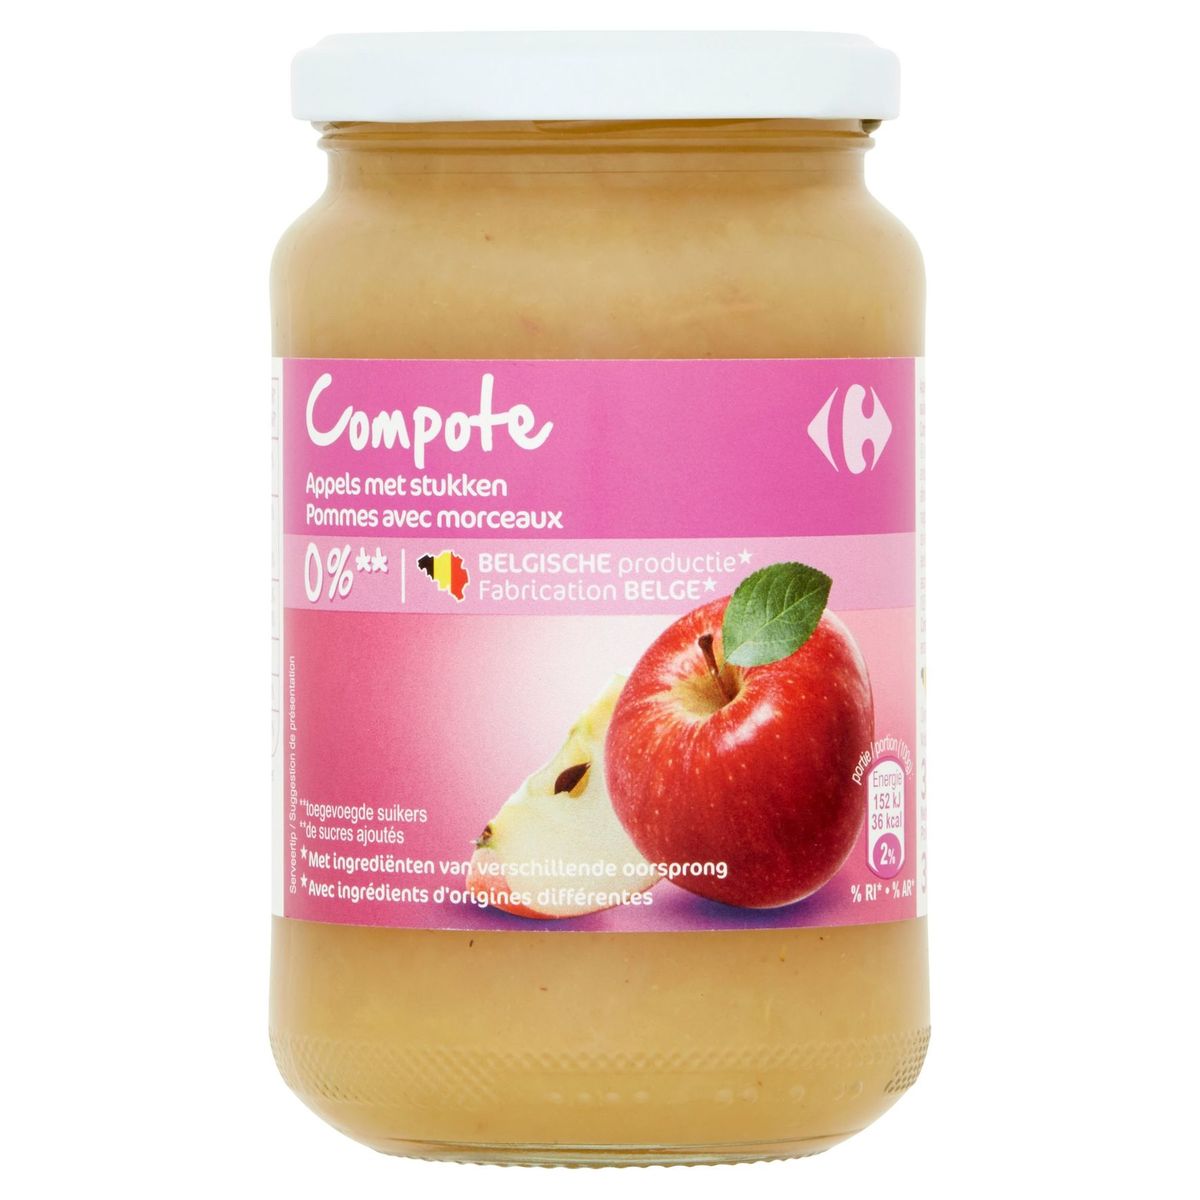 Carrefour Compote Appels met Stukken  350 g